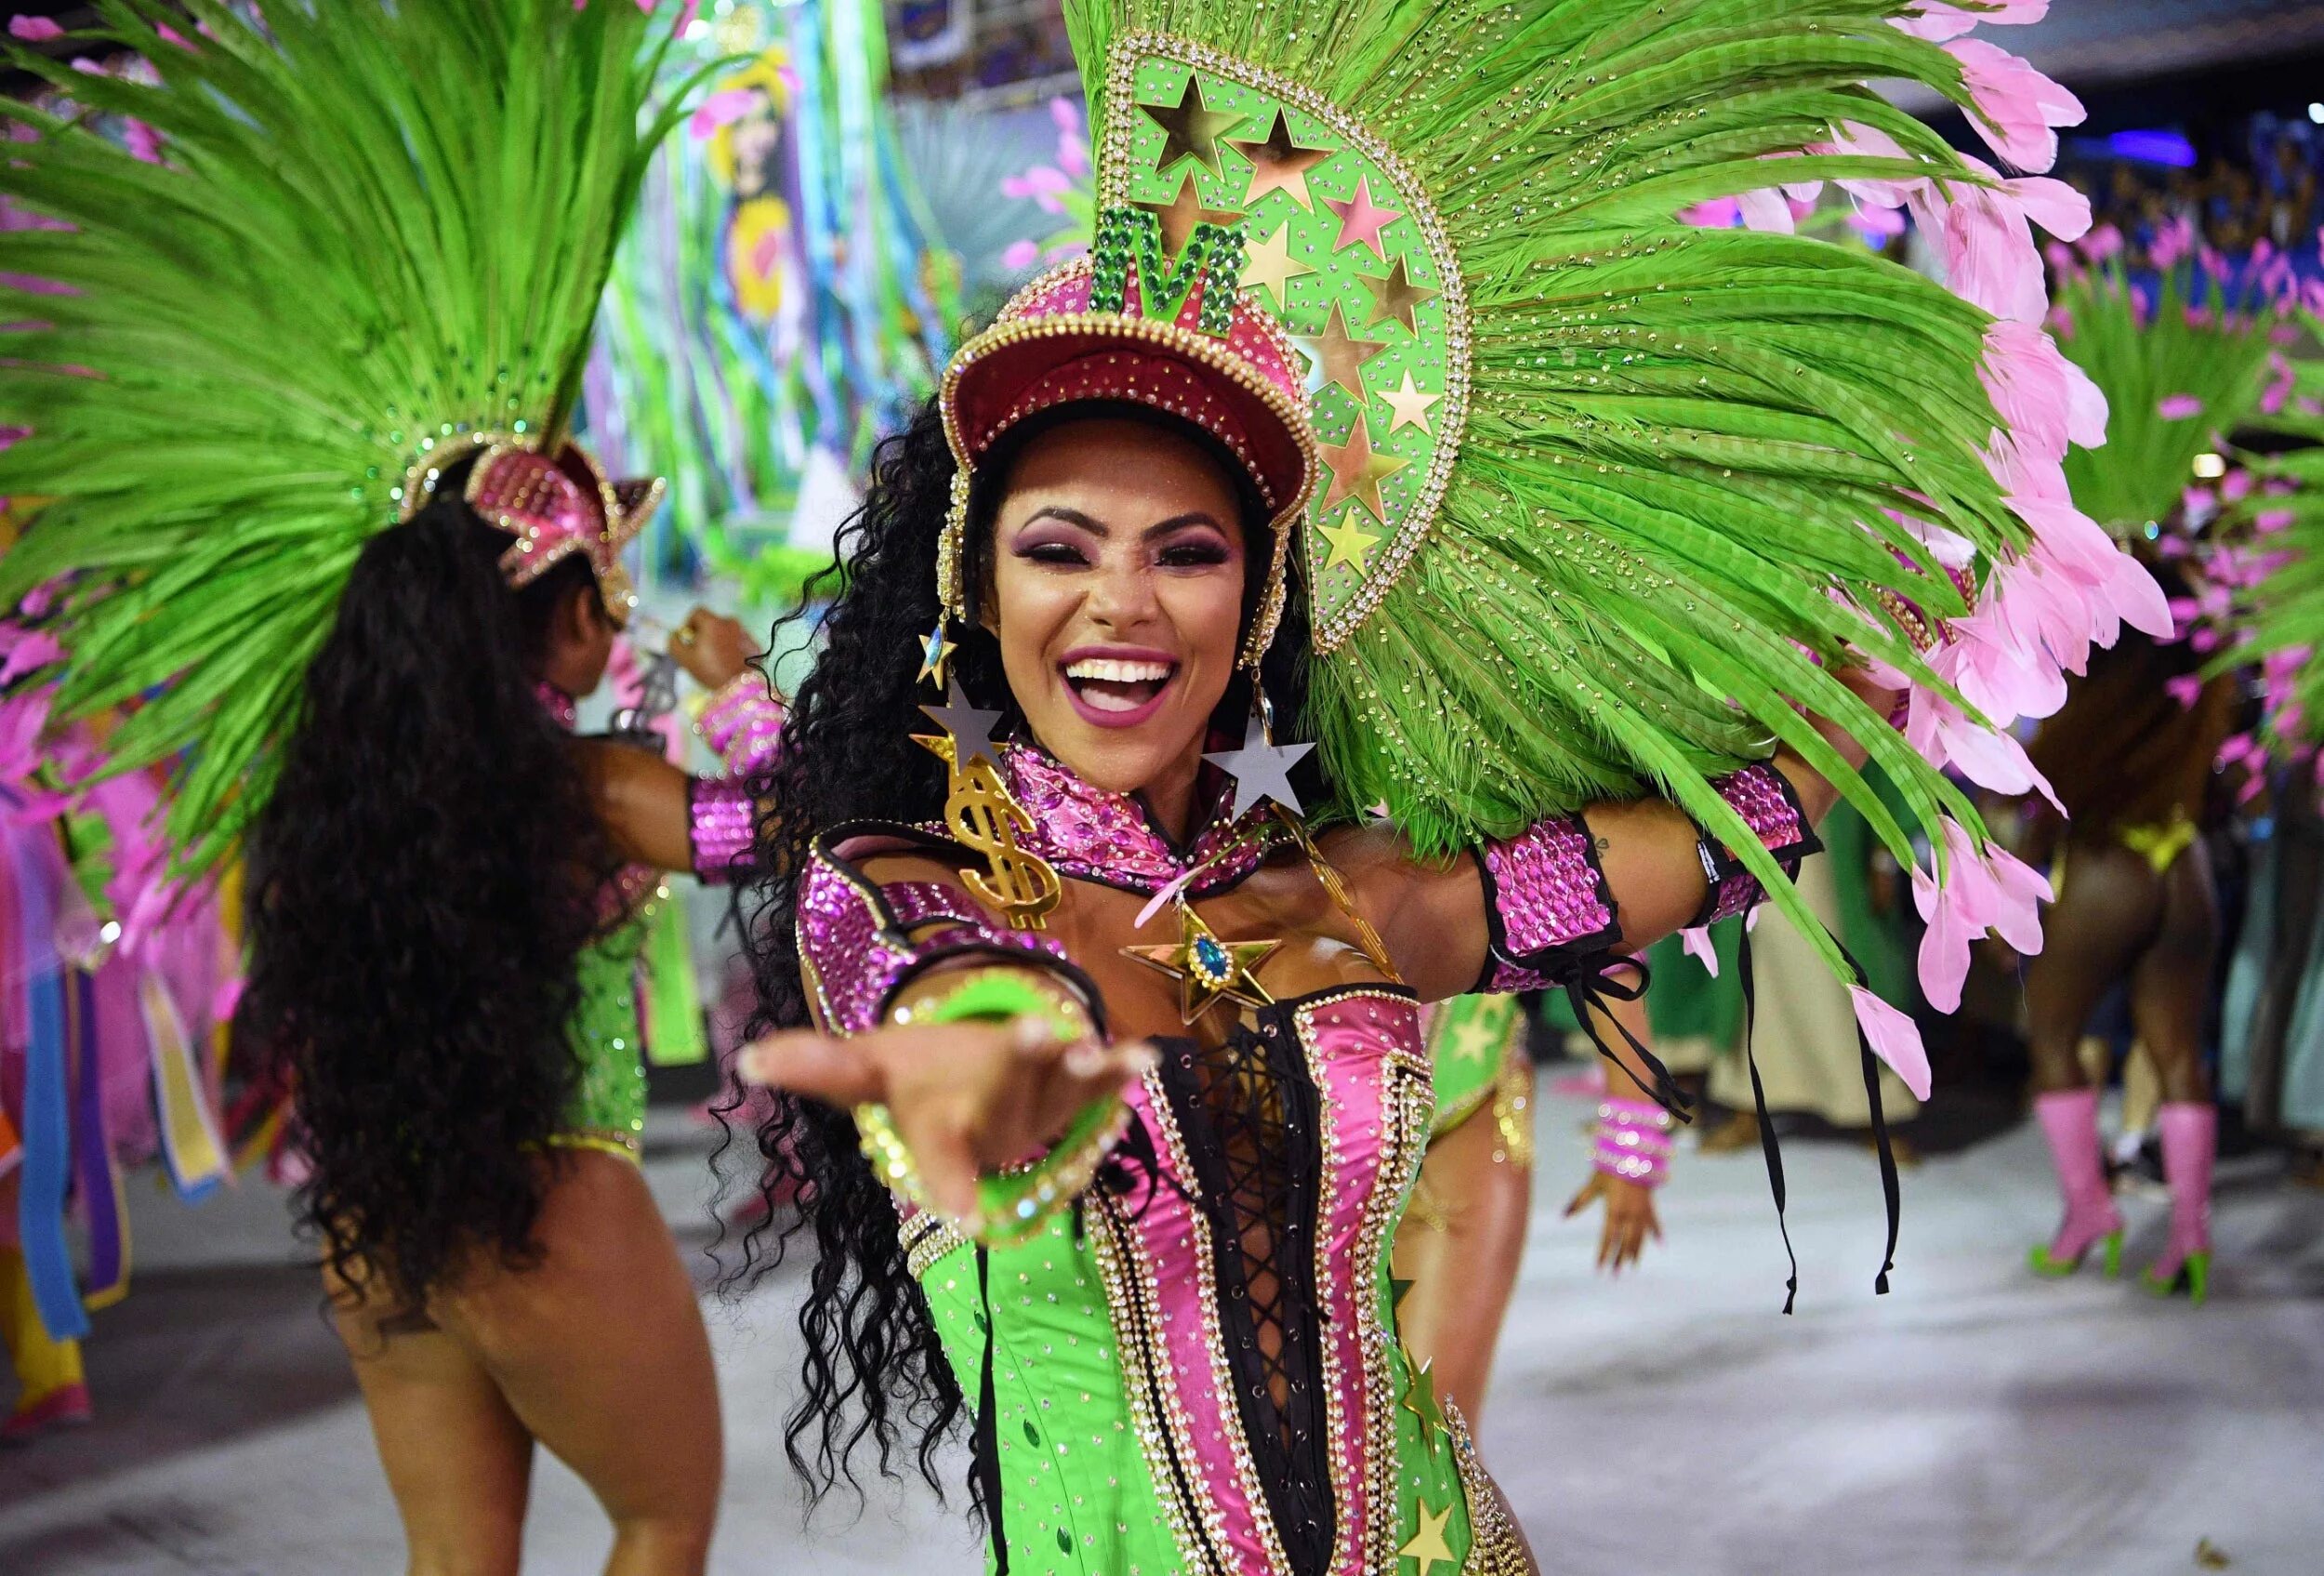 Карнавал в Рио-де-Жанейро. Бразилия фестиваль Рио де Жанейро. Бразилия парад в Рио де Жанейро. Карнавал в Рио-де-Жанейро (Rio Carnival) - Бразилия.